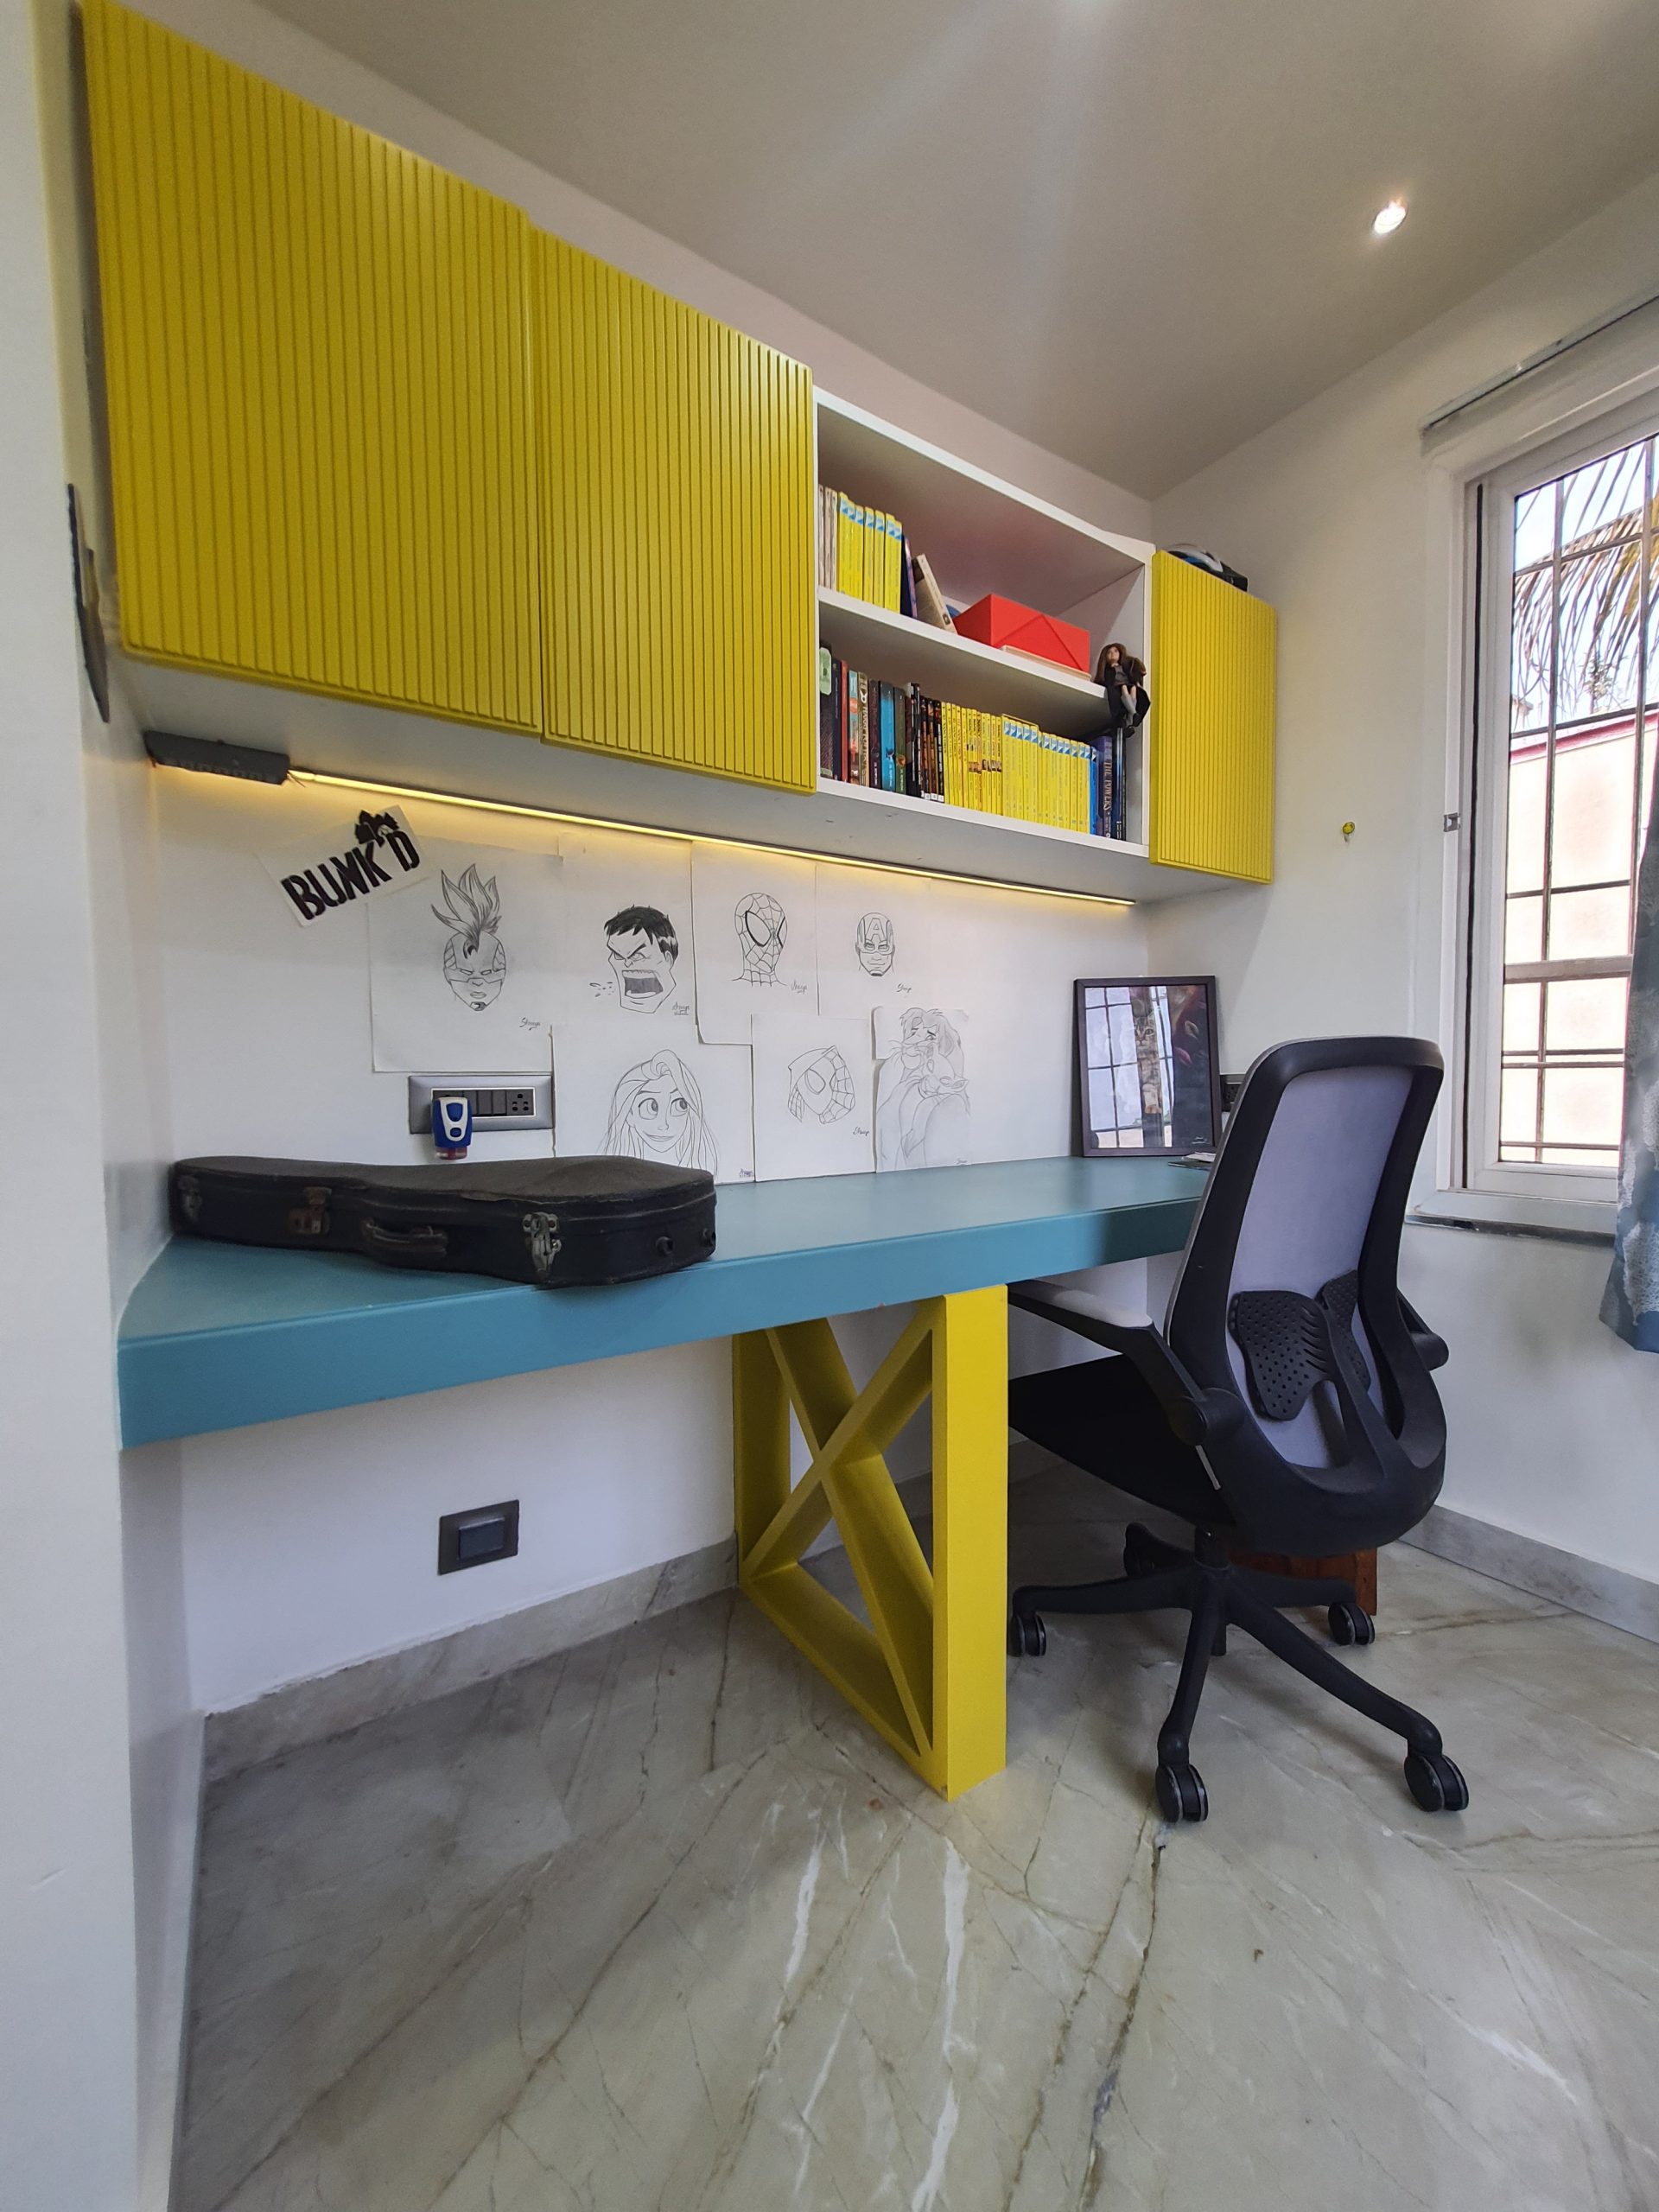 Study room Interior design and furniture design best architect and interior design in Pune